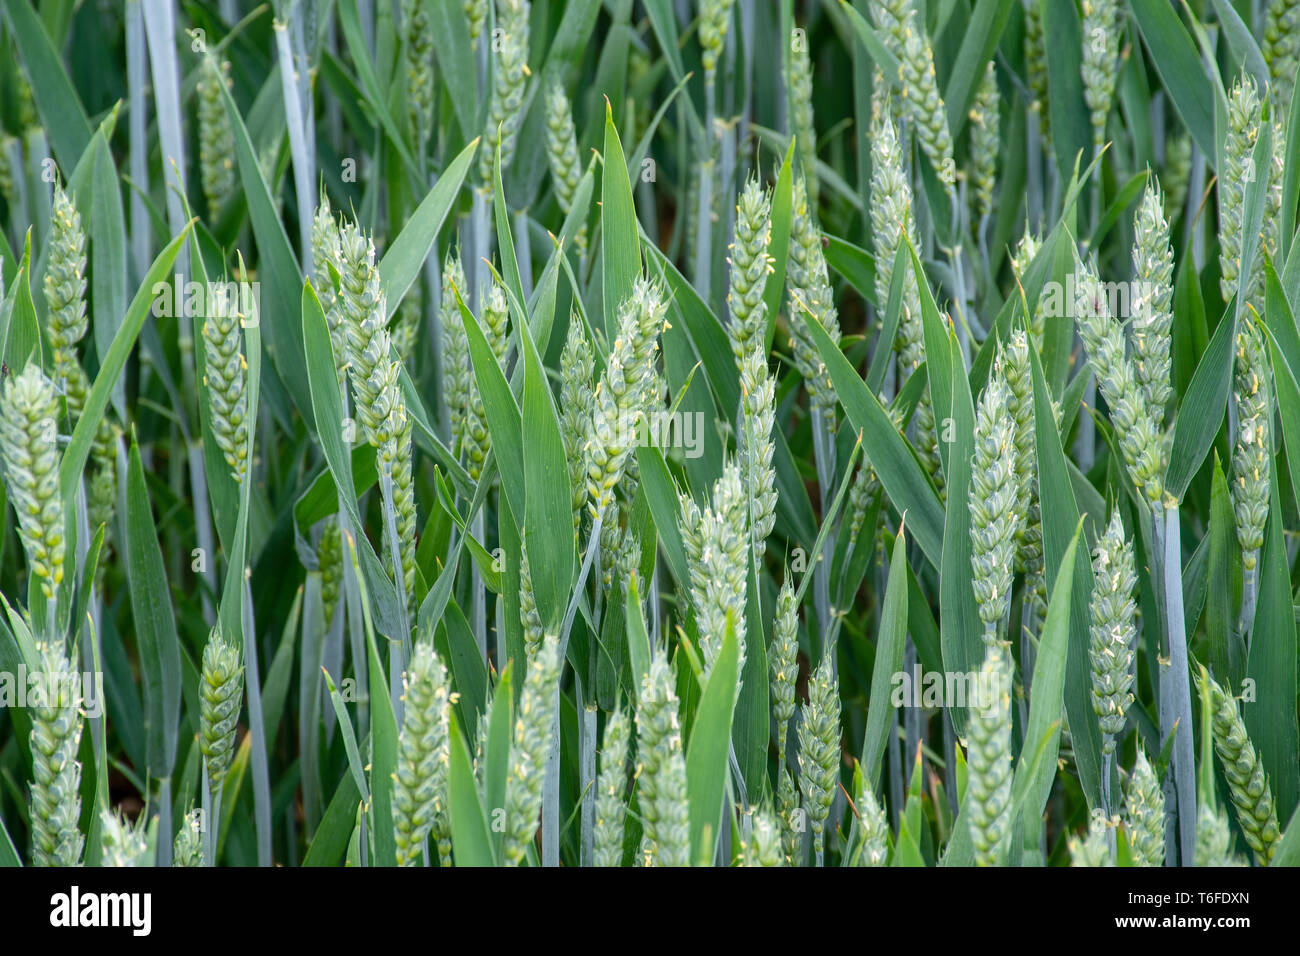 Unripe green wheat  in field Stock Photo